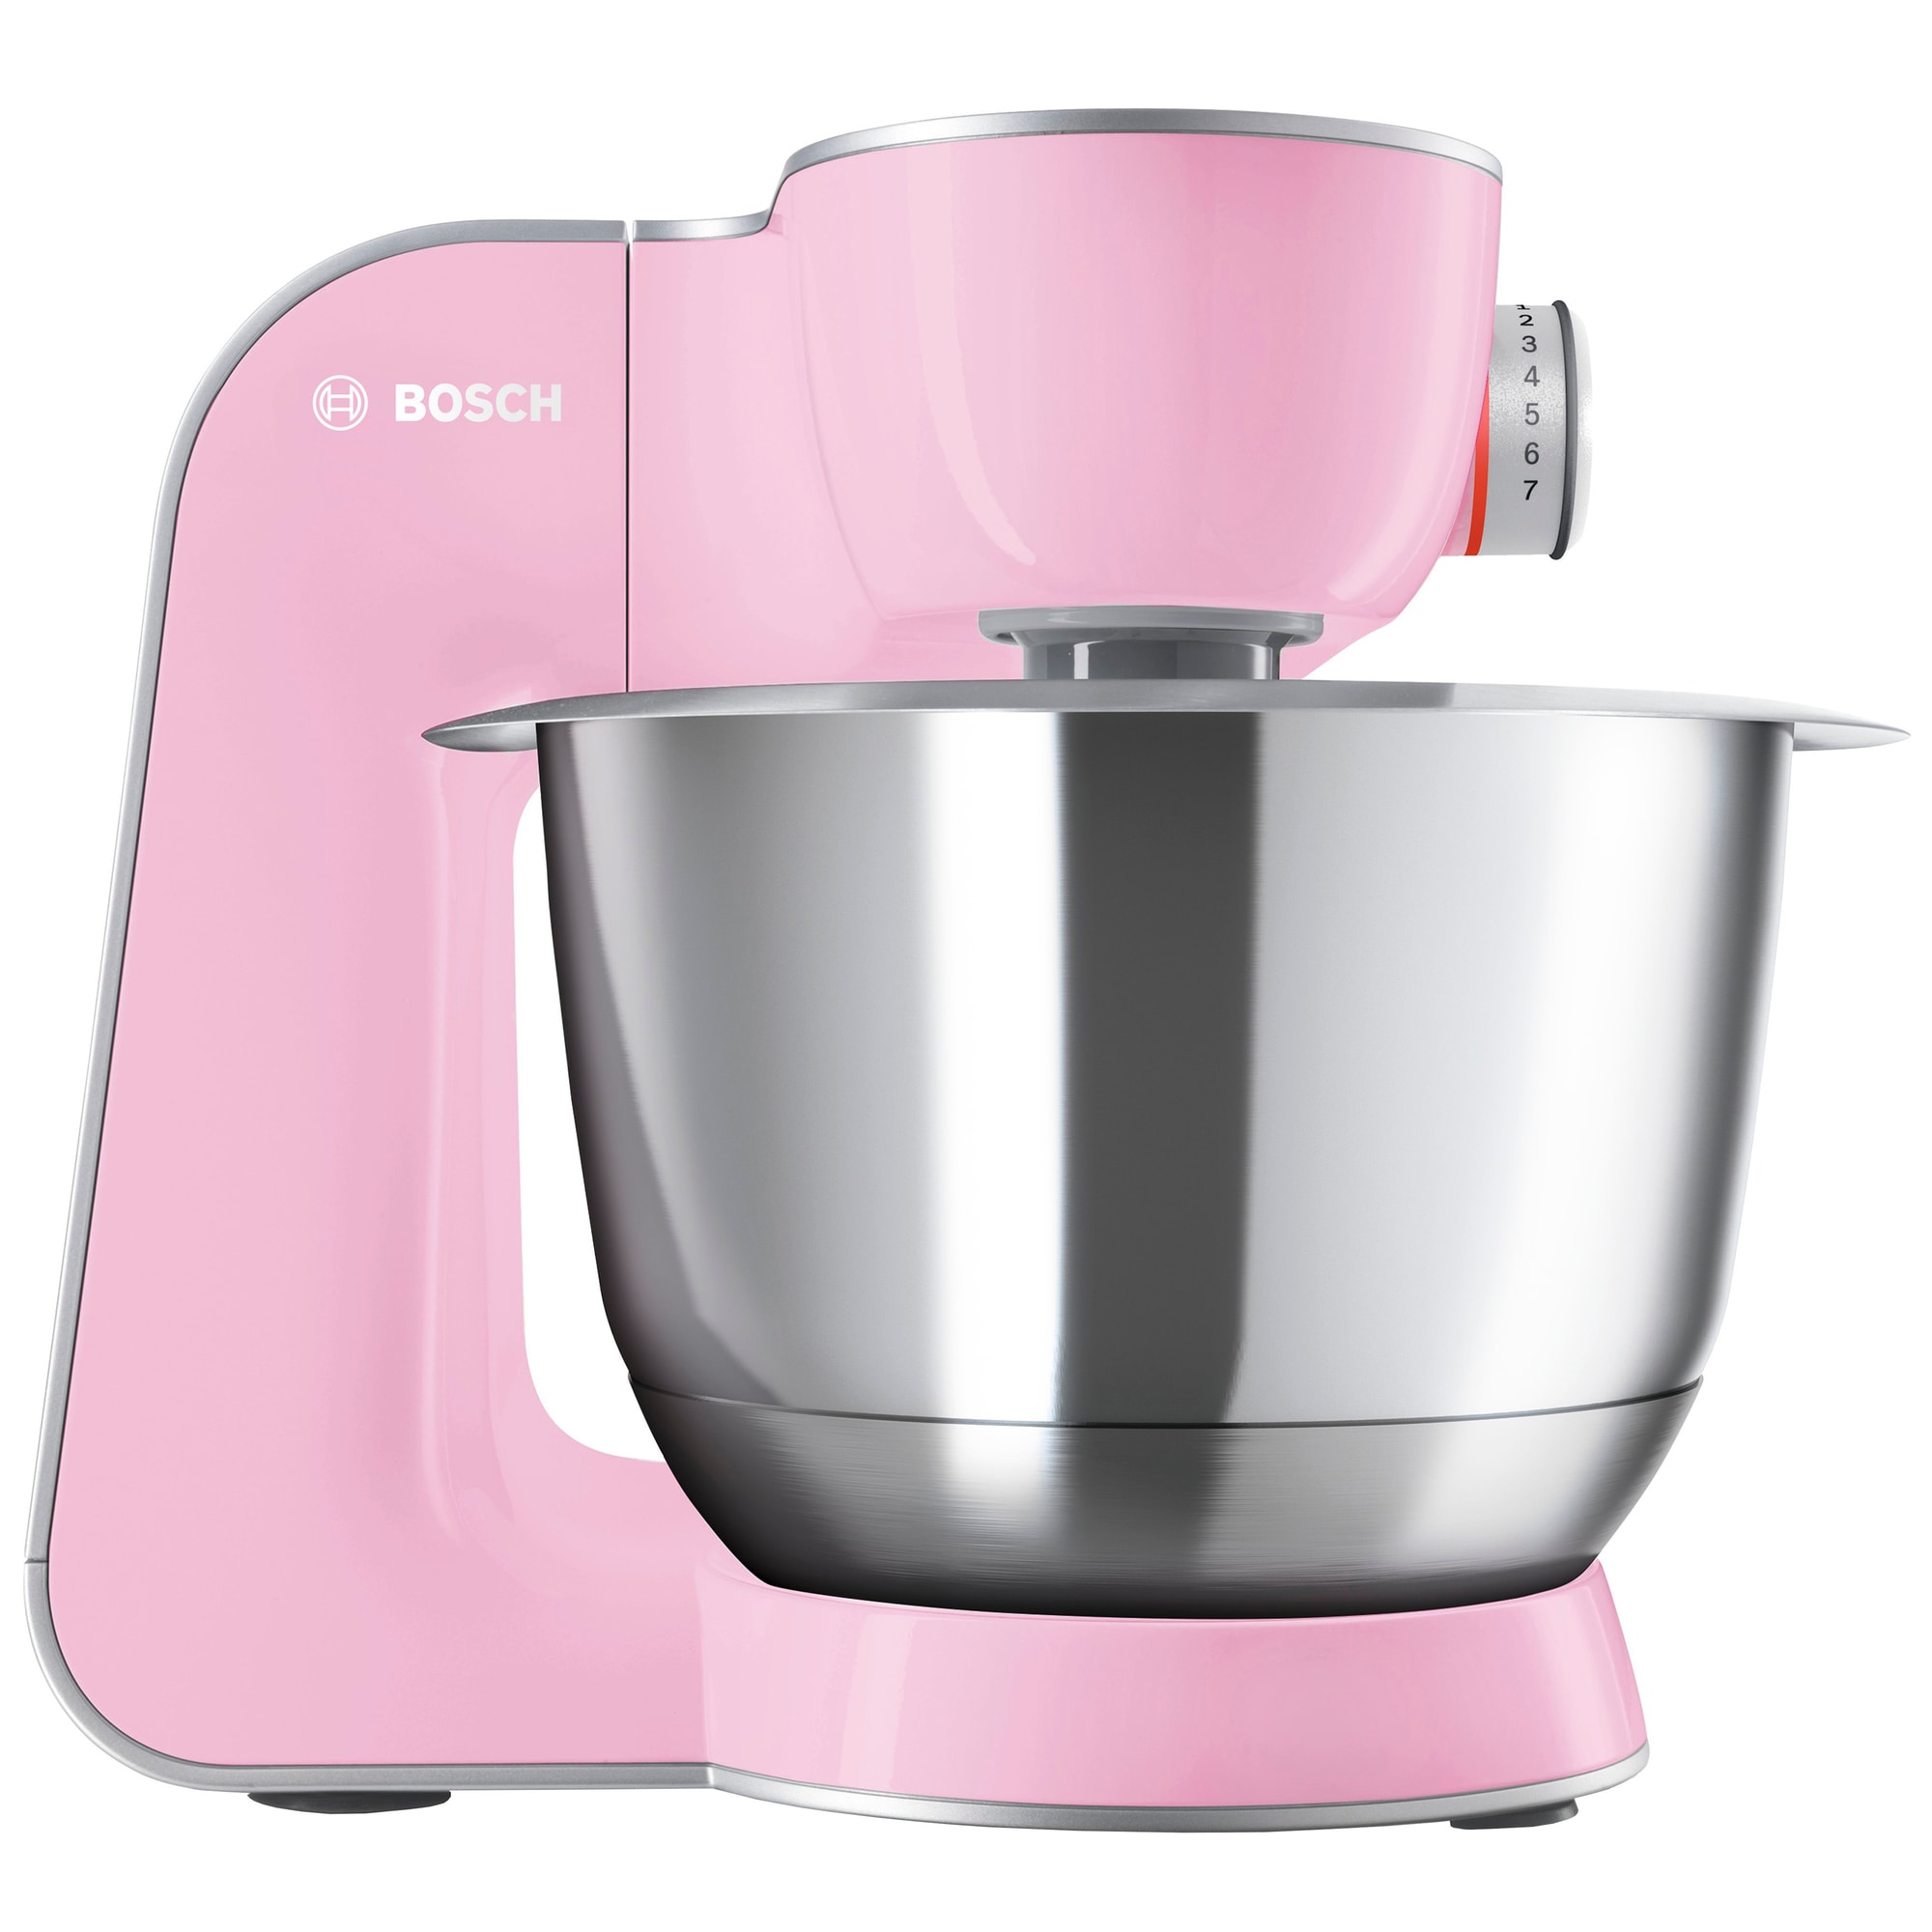 Bosch MUM5 CreationLine kjøkkenmaskin (rosa/sølv) - Elkjøp